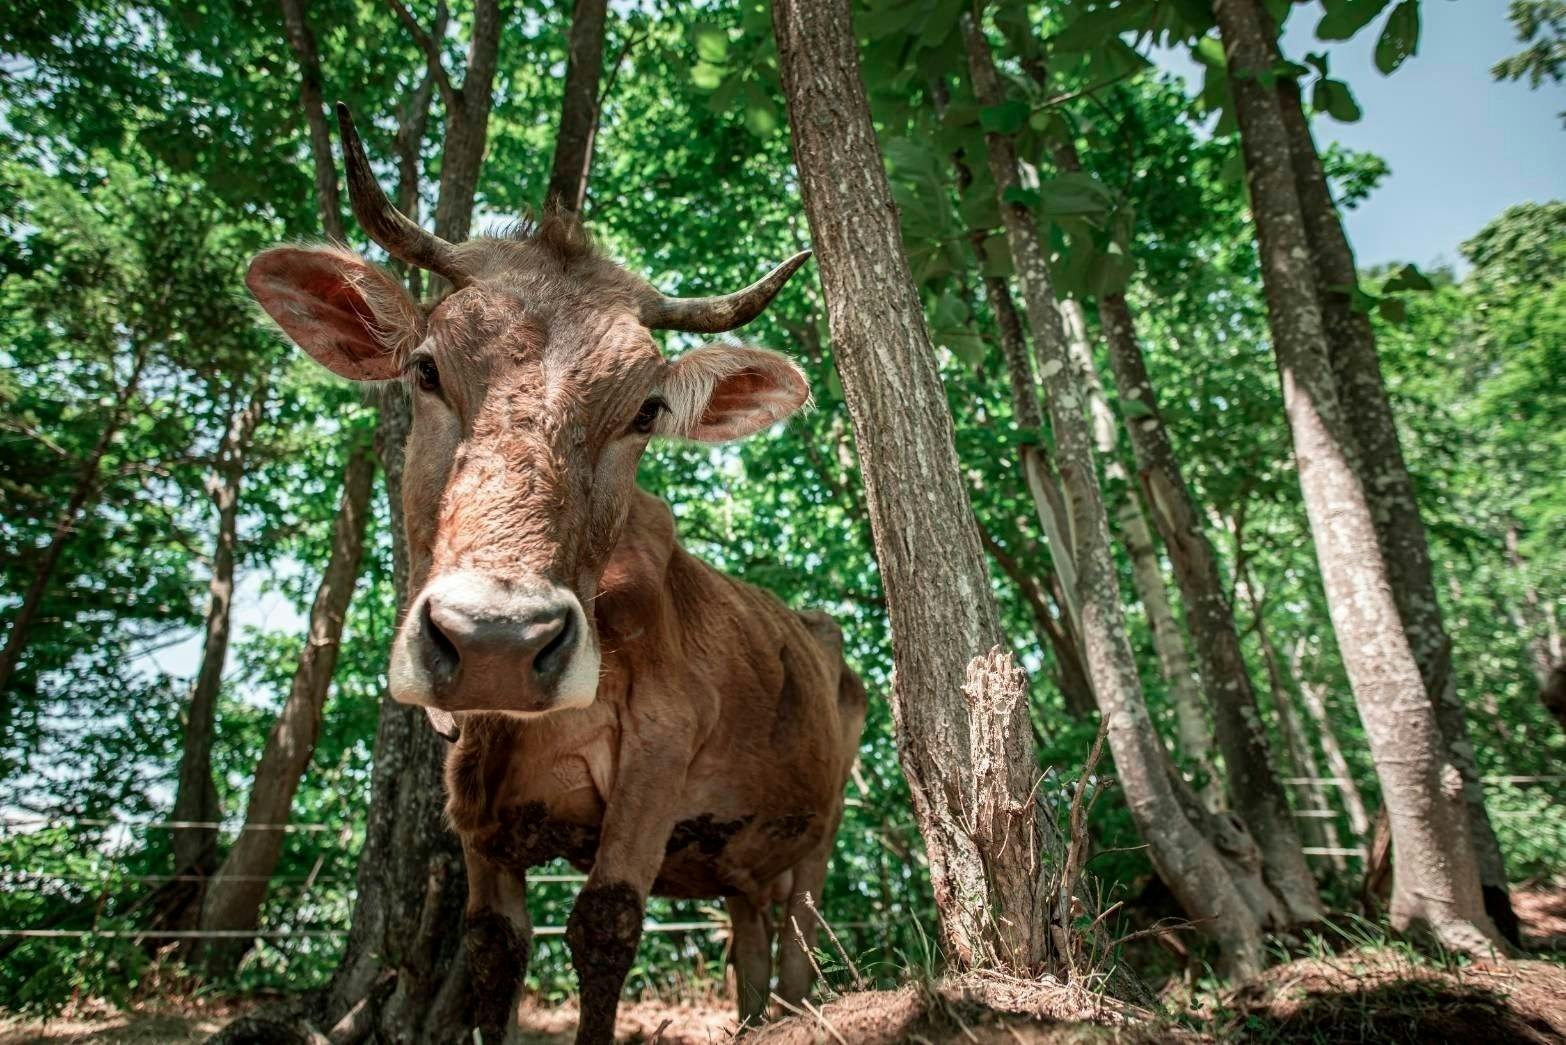 森林放牧と草だけで育ったブラウンスイス牛のお肉を食べてください！ - CAMPFIRE (キャンプファイヤー)